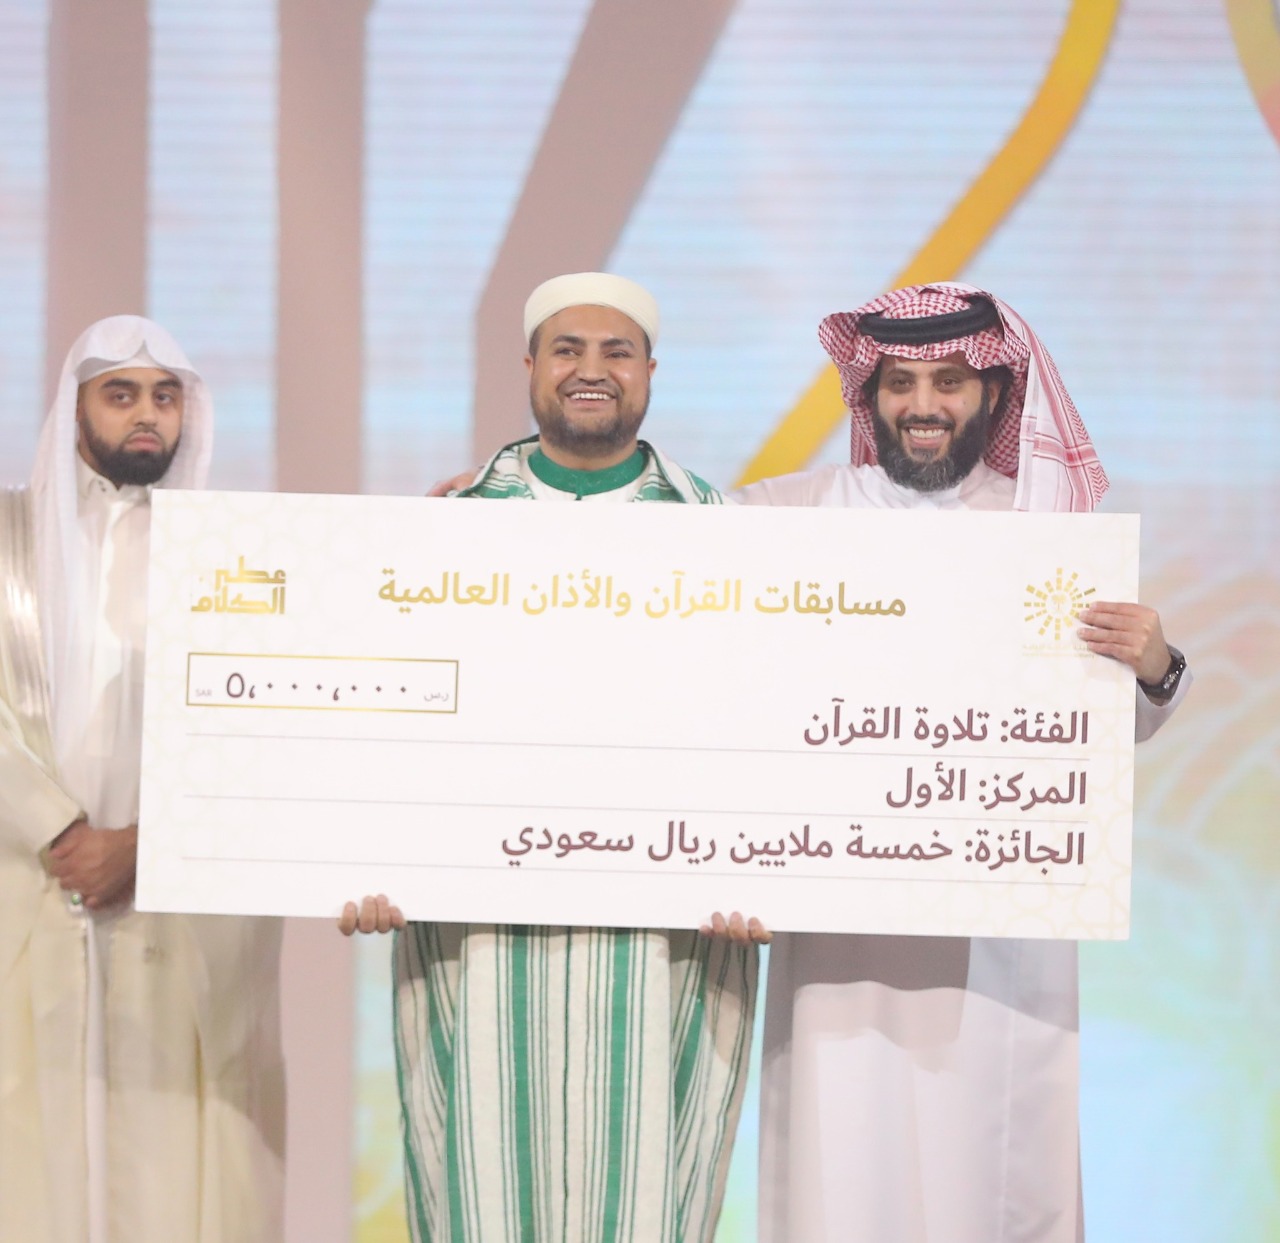 Turki Al-Sheikh presents the winners